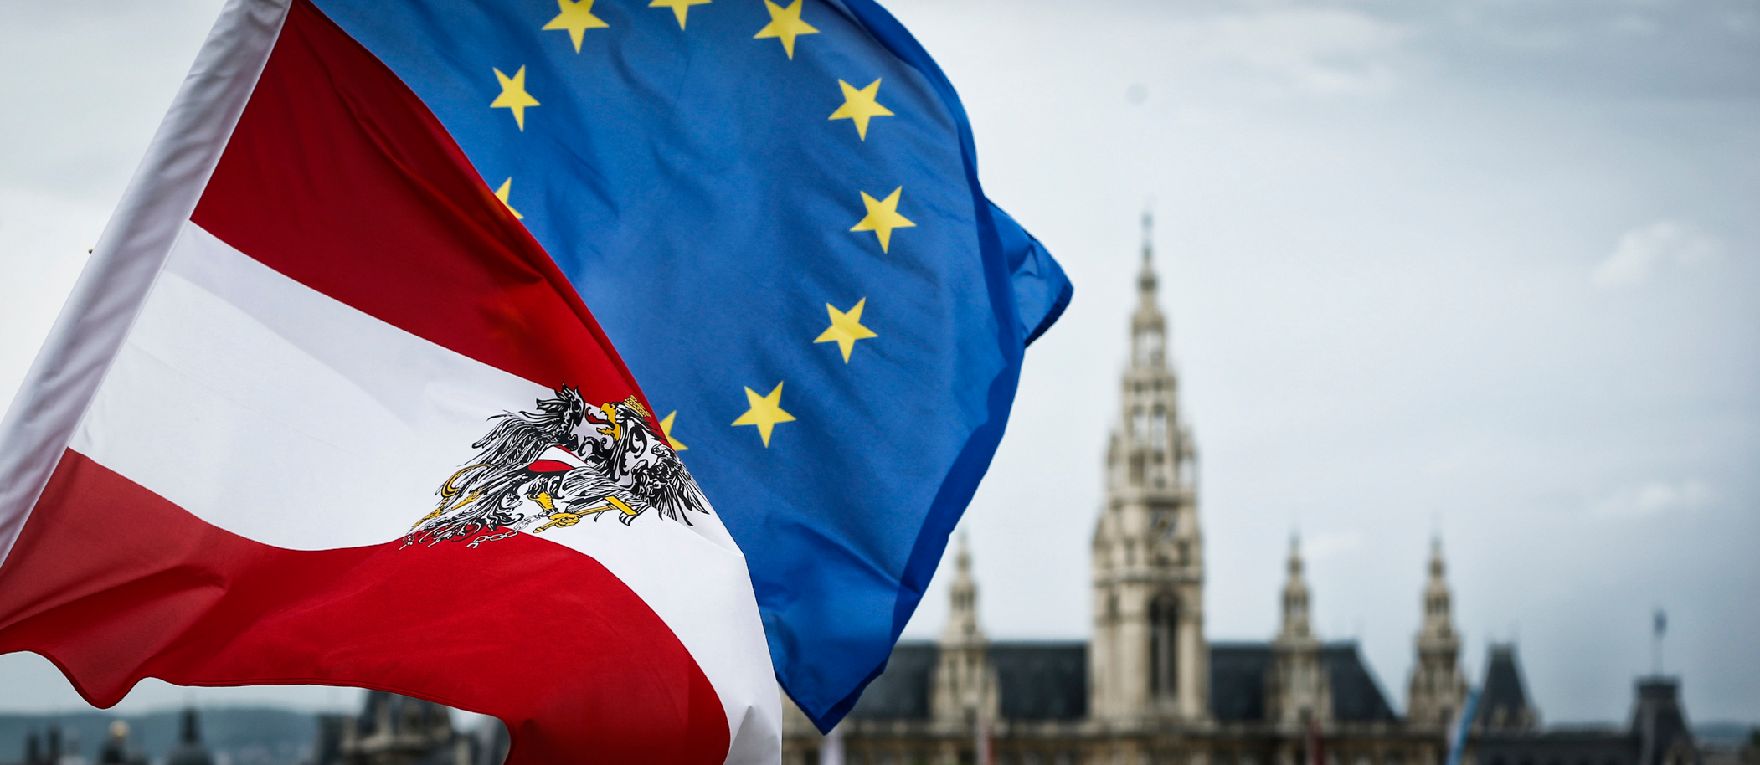 Die österreichische und europäische Fahne wehen im Wind. Im Hintergrund das Rathaus. Schlagworte: Bundesadler, Fahnen, Flaggen